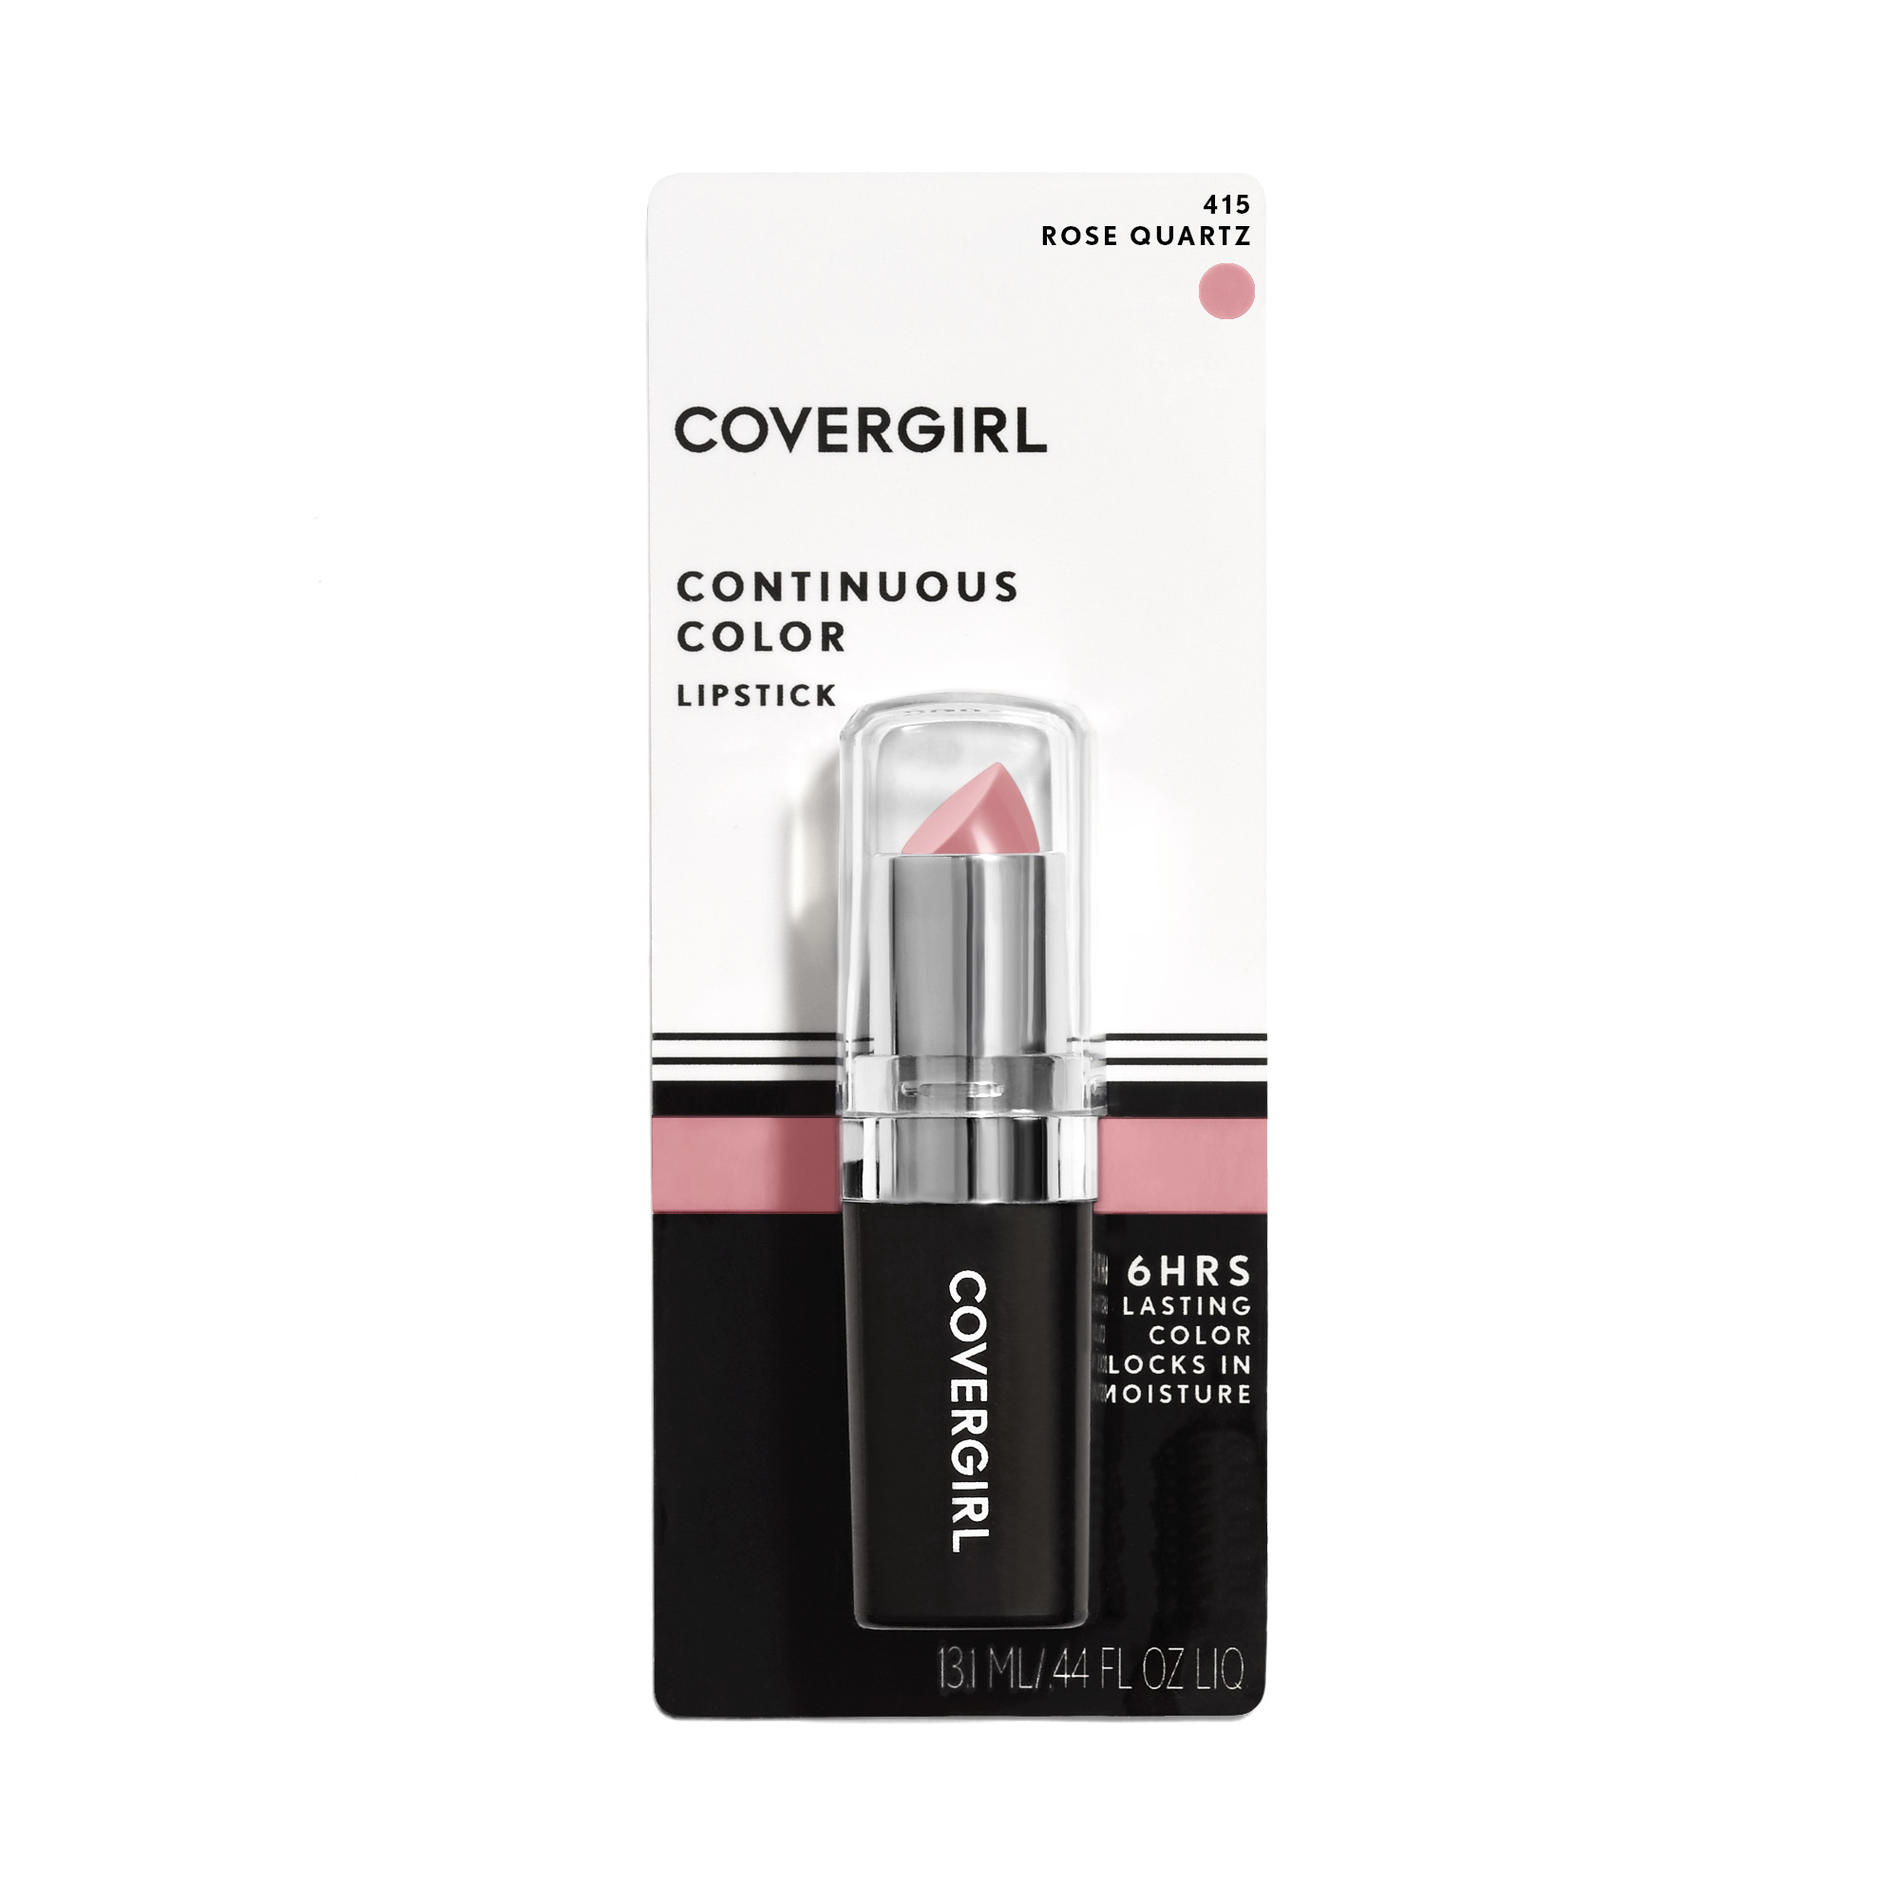 COVERGIRL Continuous Color Lipstick, 415 Rose Quartz, 0.13 oz - image 3 of 10